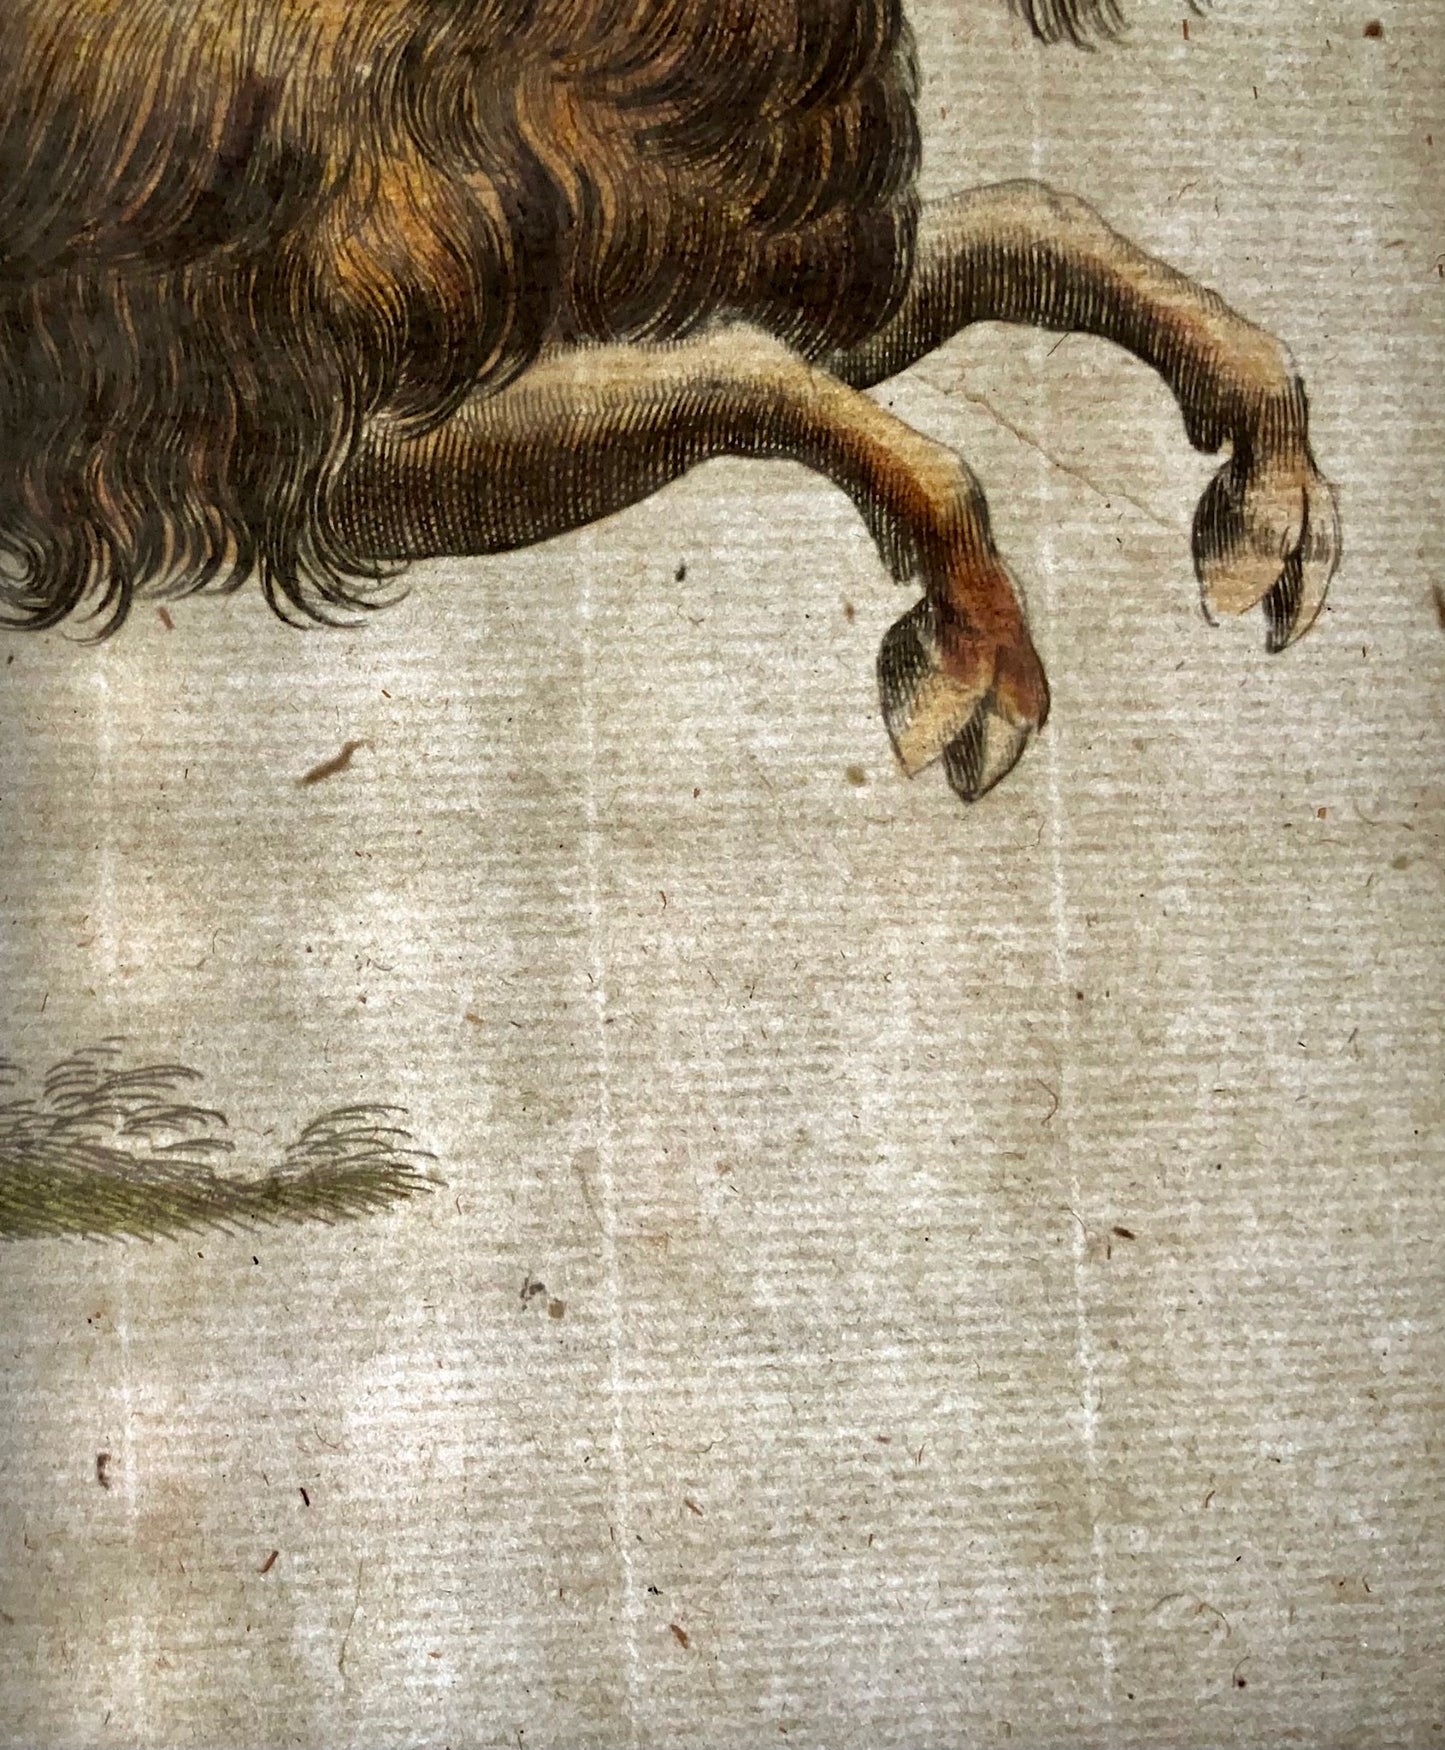 1657 Stambecco, Muflone, Capra, Matt. Merian, folio, incisione colorata a mano, mammiferi